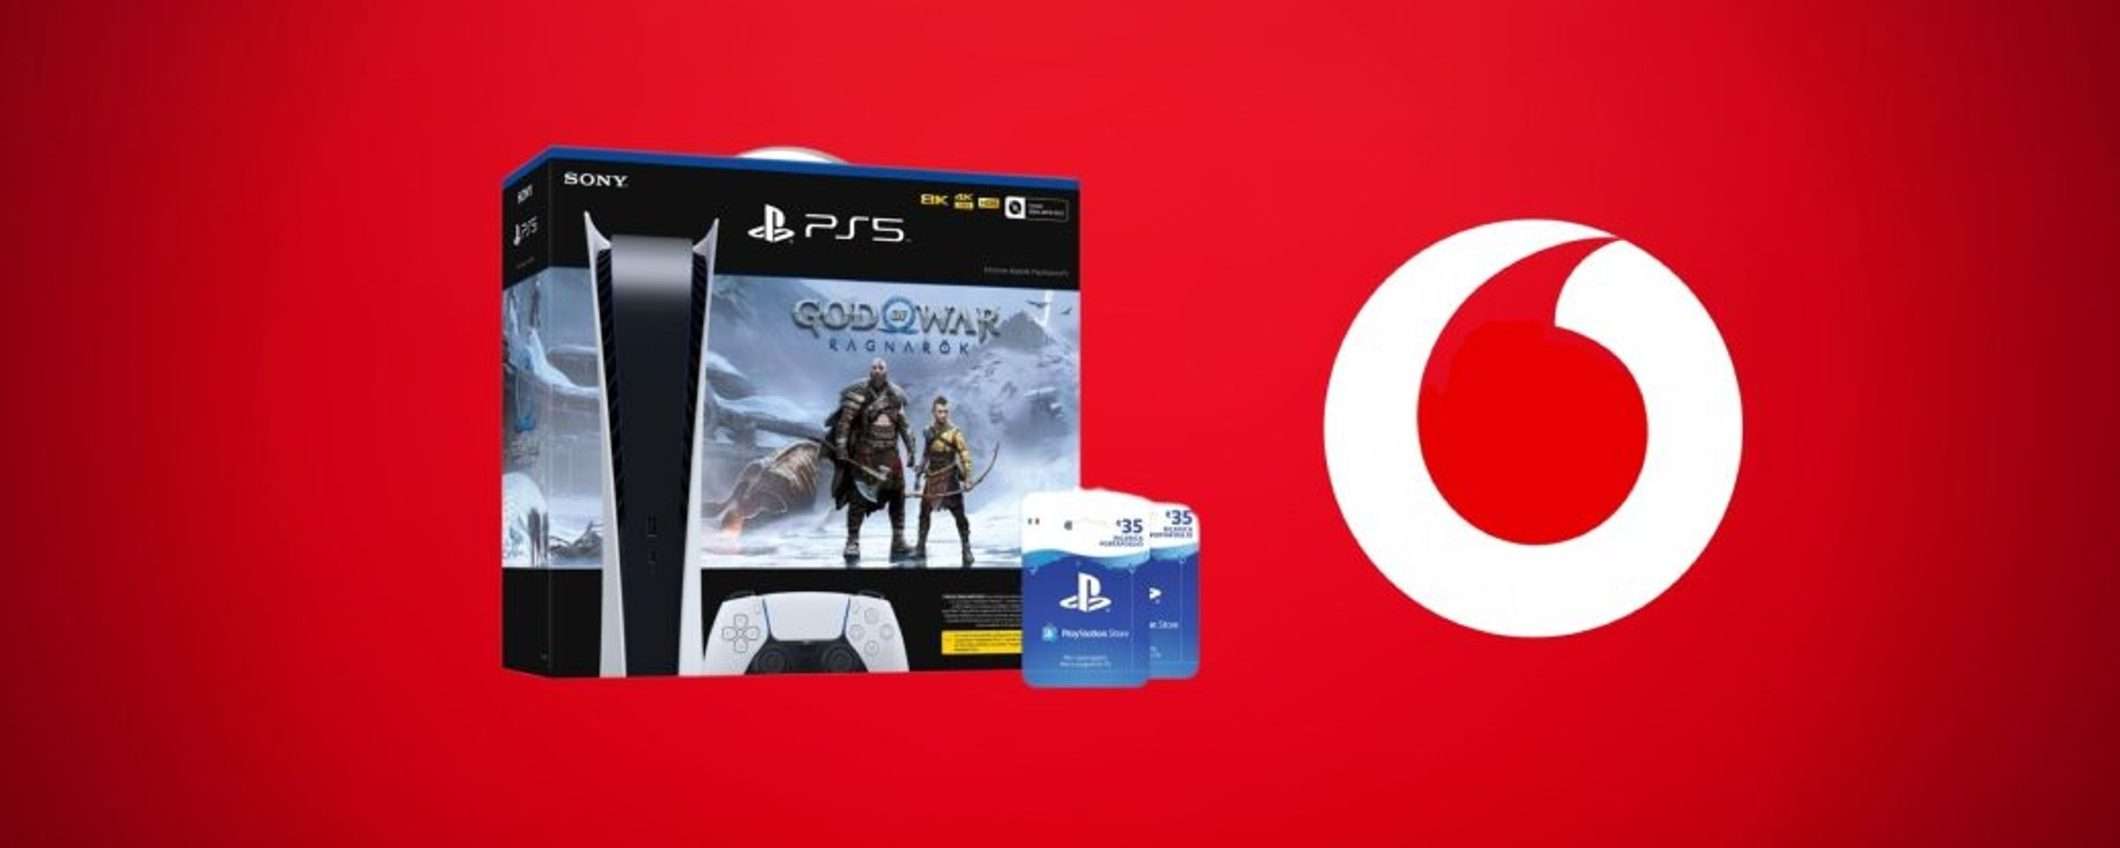 PlayStation 5: PROMO BOMBA, in esclusiva con Vodafone